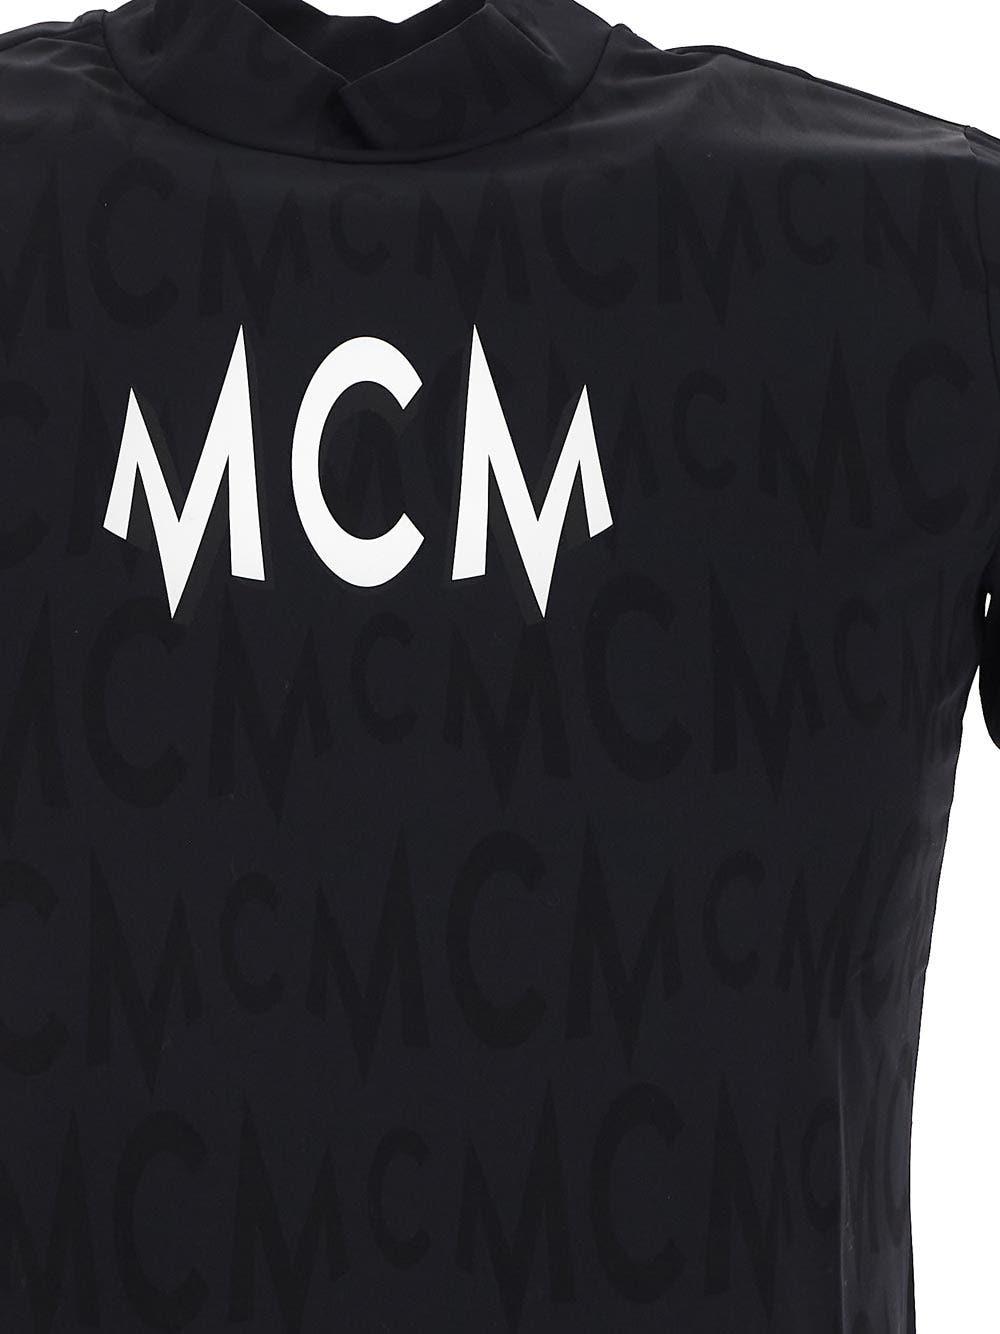 MCM Logo Tshirt (Black)